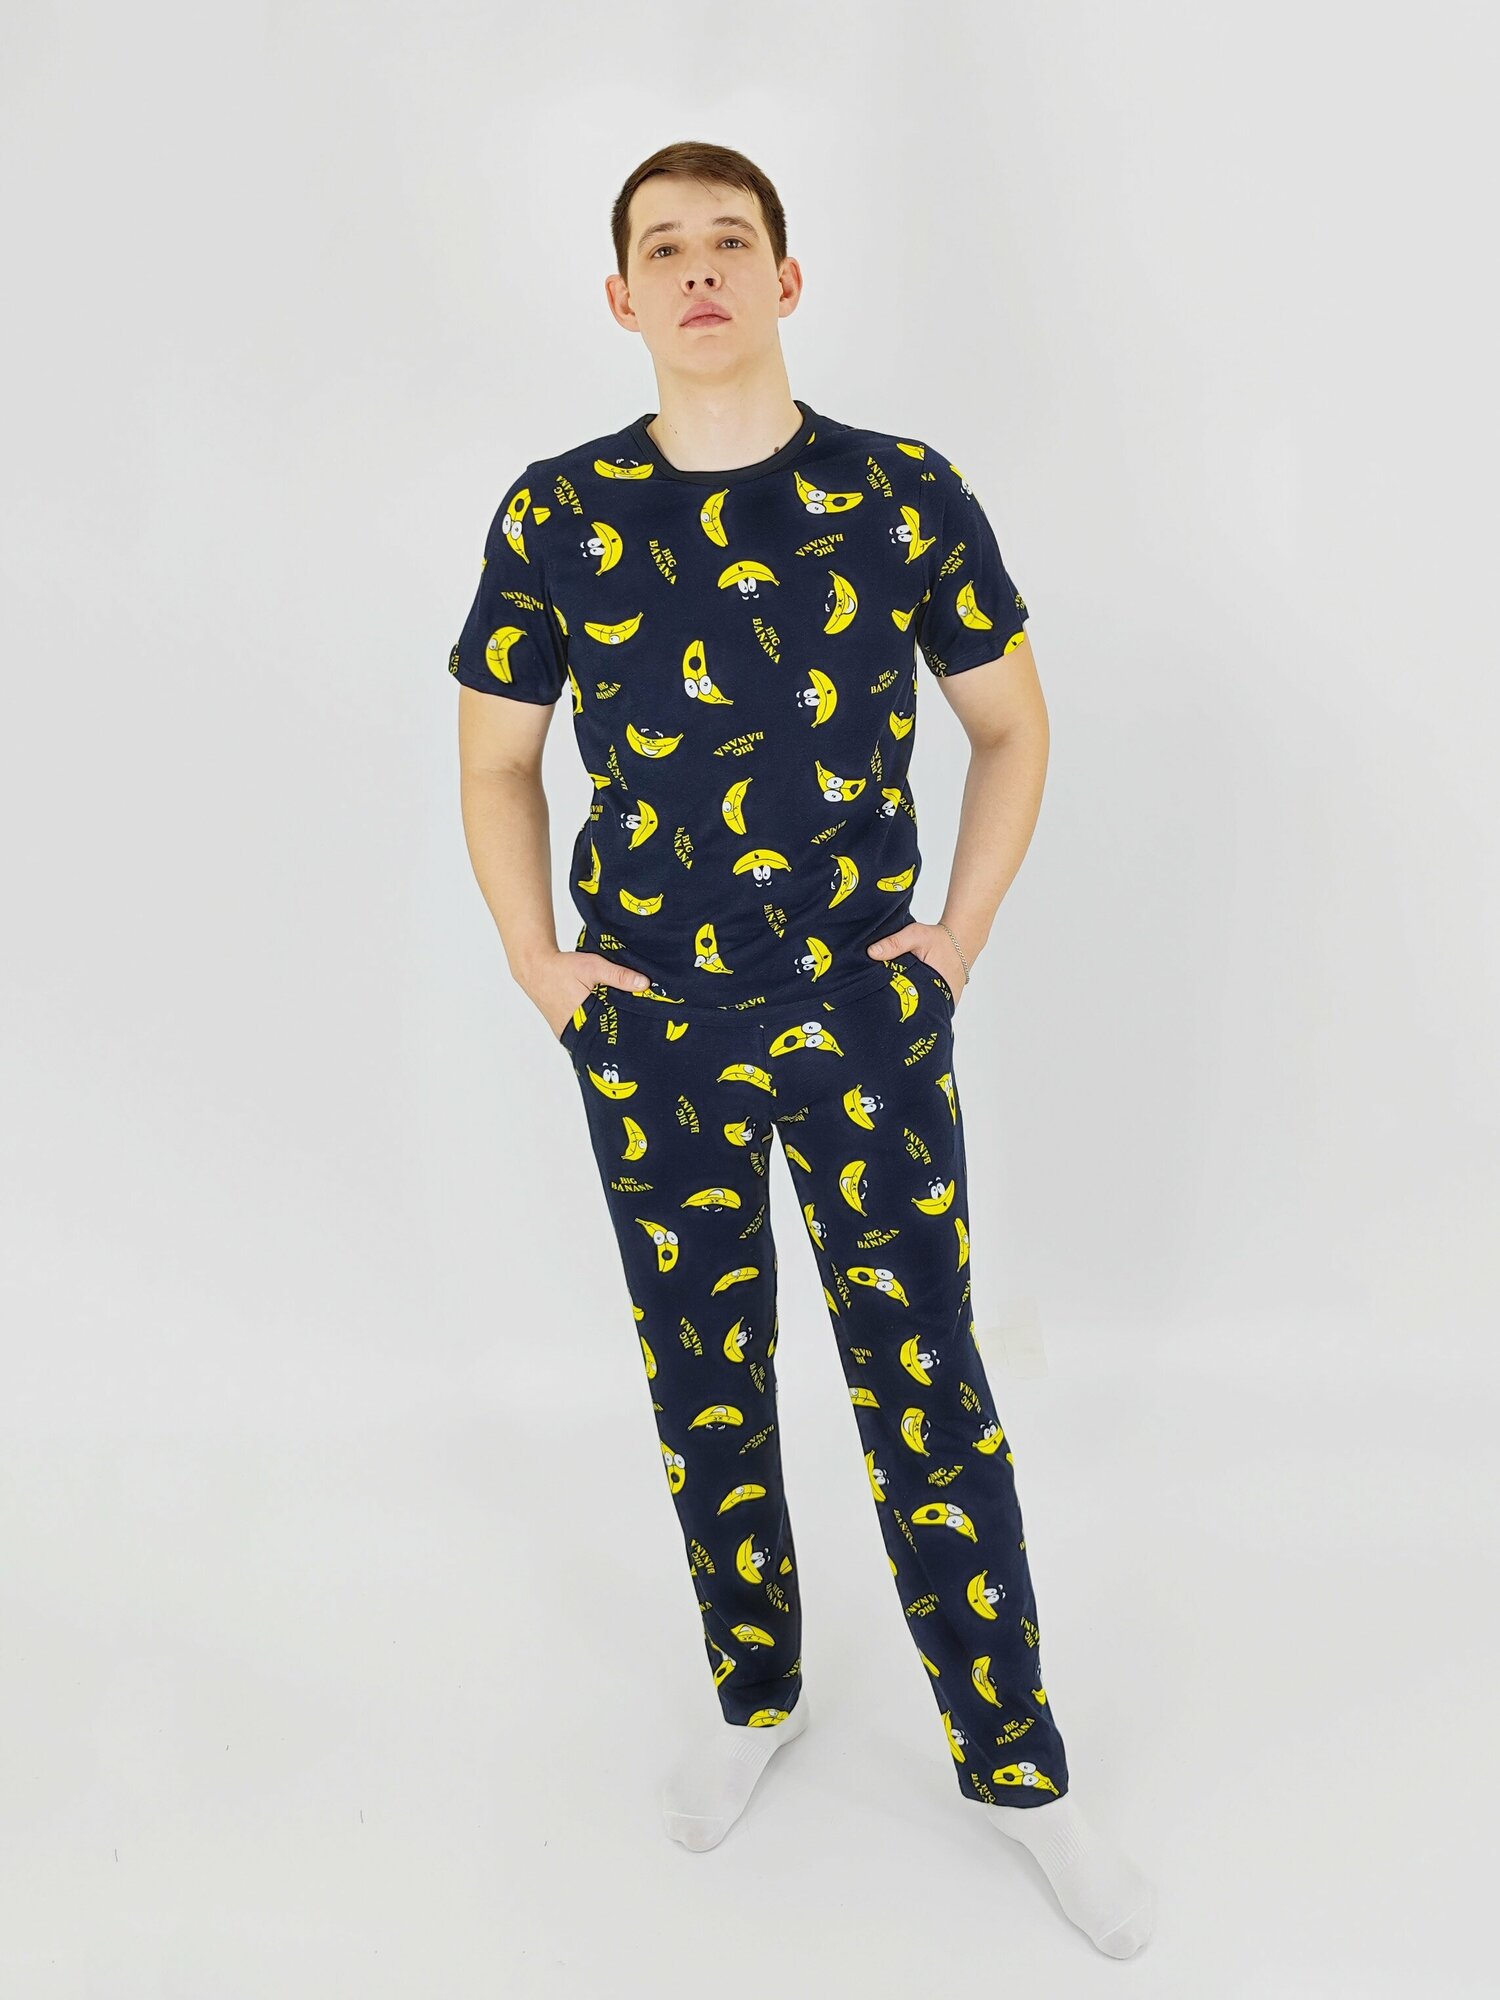 Мужская пижама, мужской пижамный комплект ARISTARHOV, Футболка + Брюки, Бананчик, синий желтый, размер 52 - фотография № 2